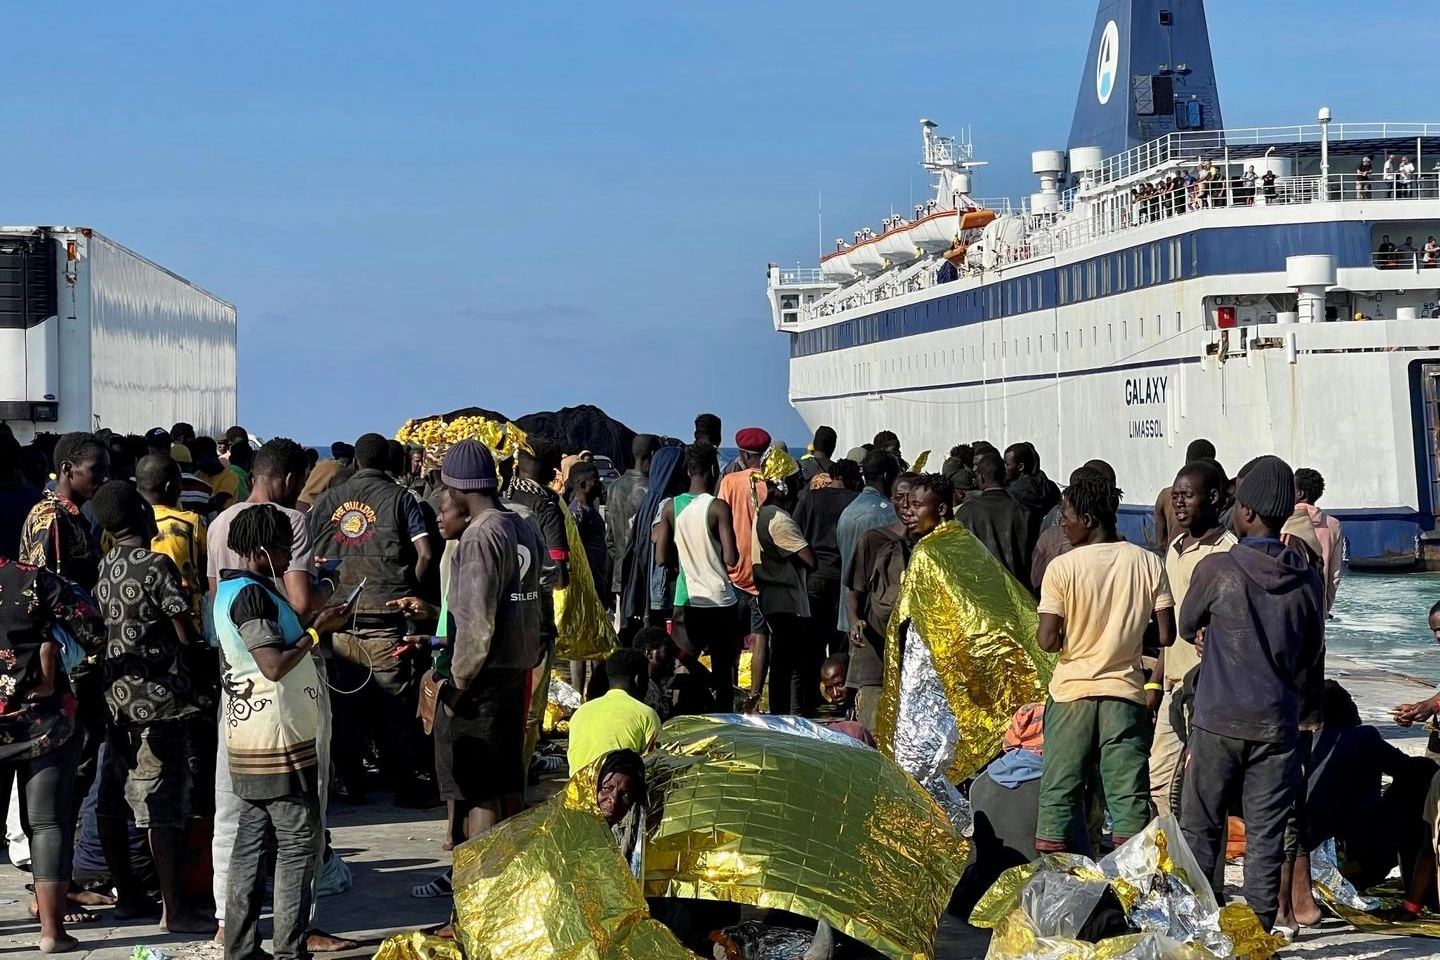 I migranti ammassati sul molo a Lampedusa